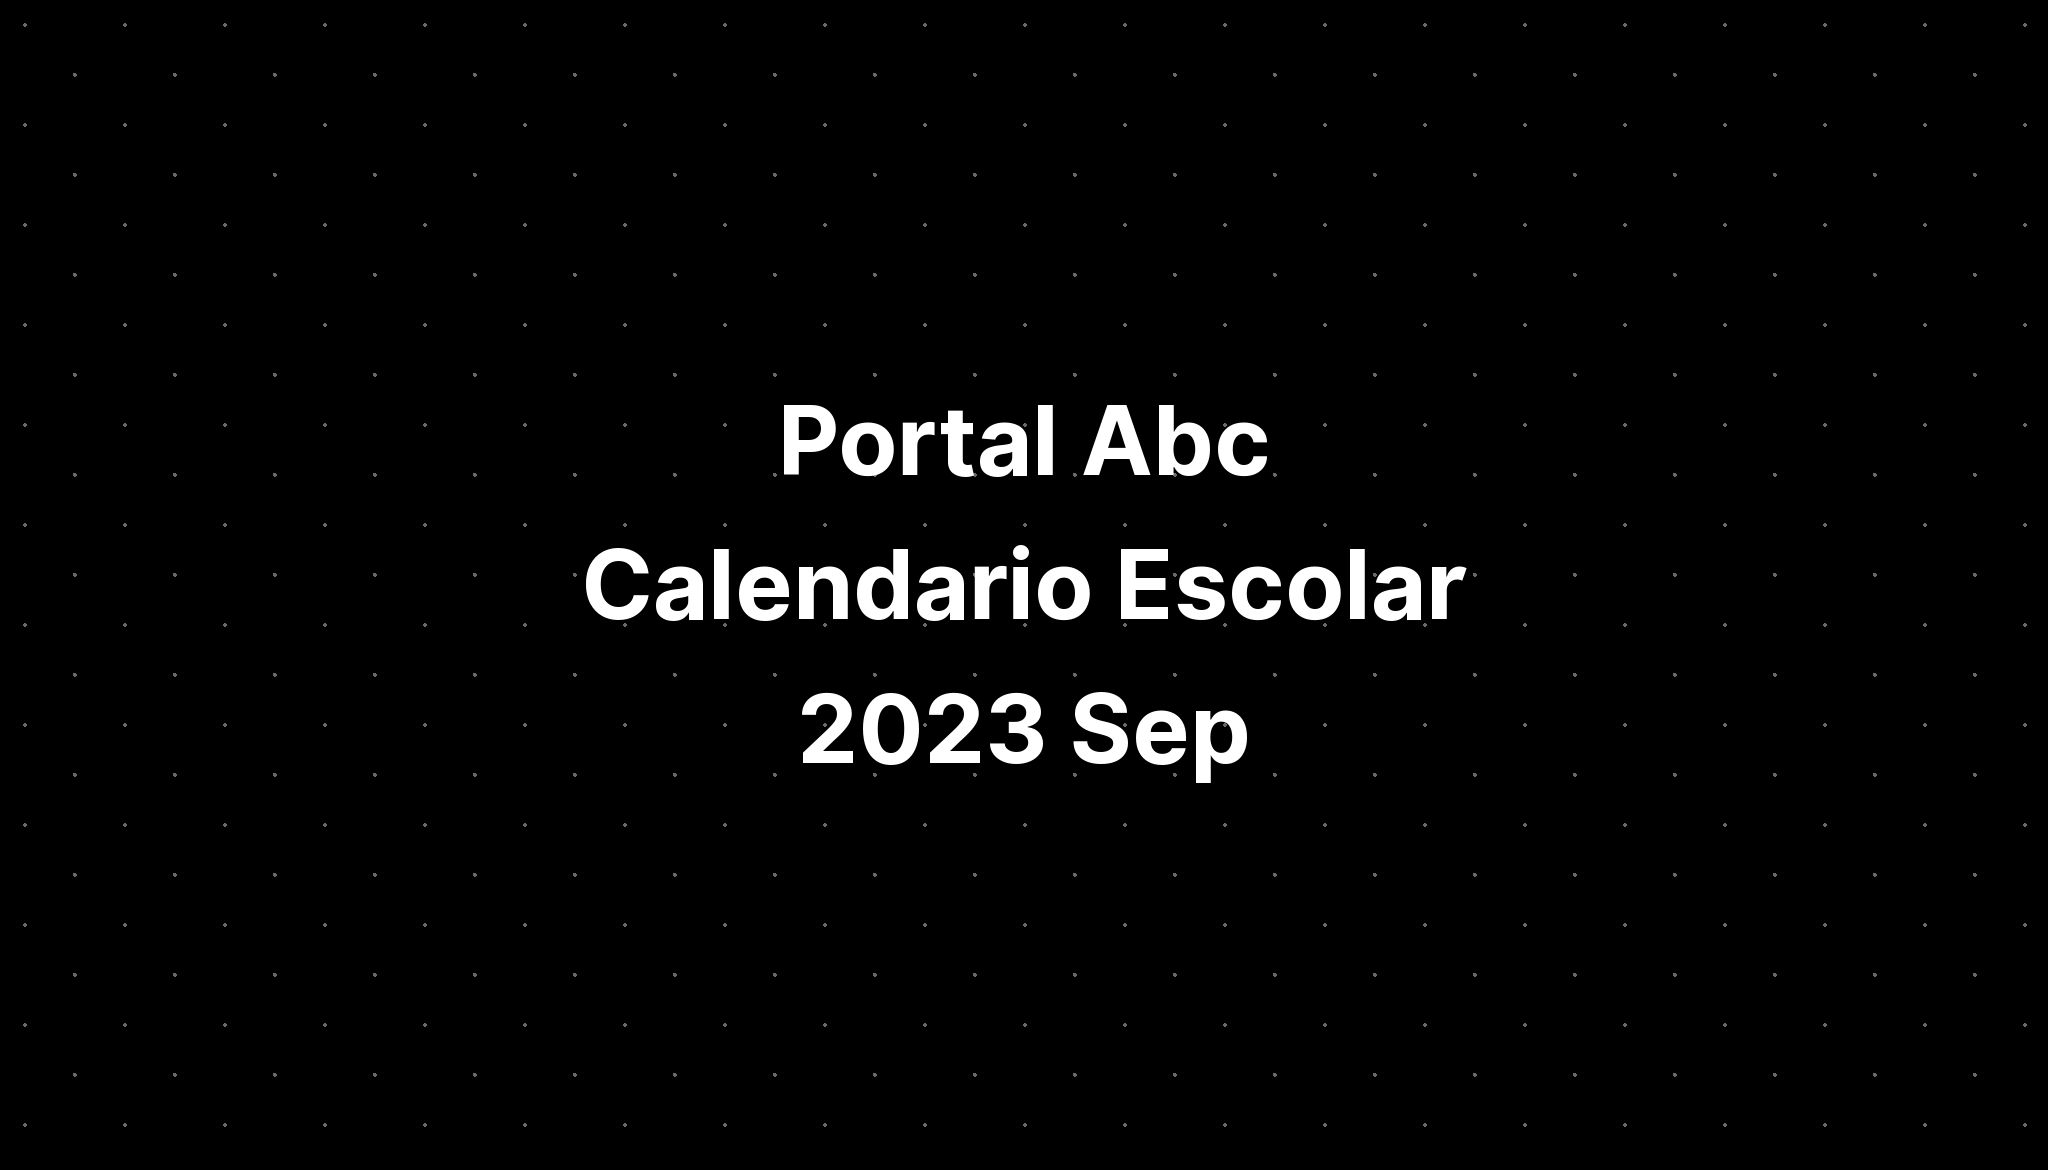 Portal Abc Calendario Escolar 2023 2024 Costa Rica IMAGESEE